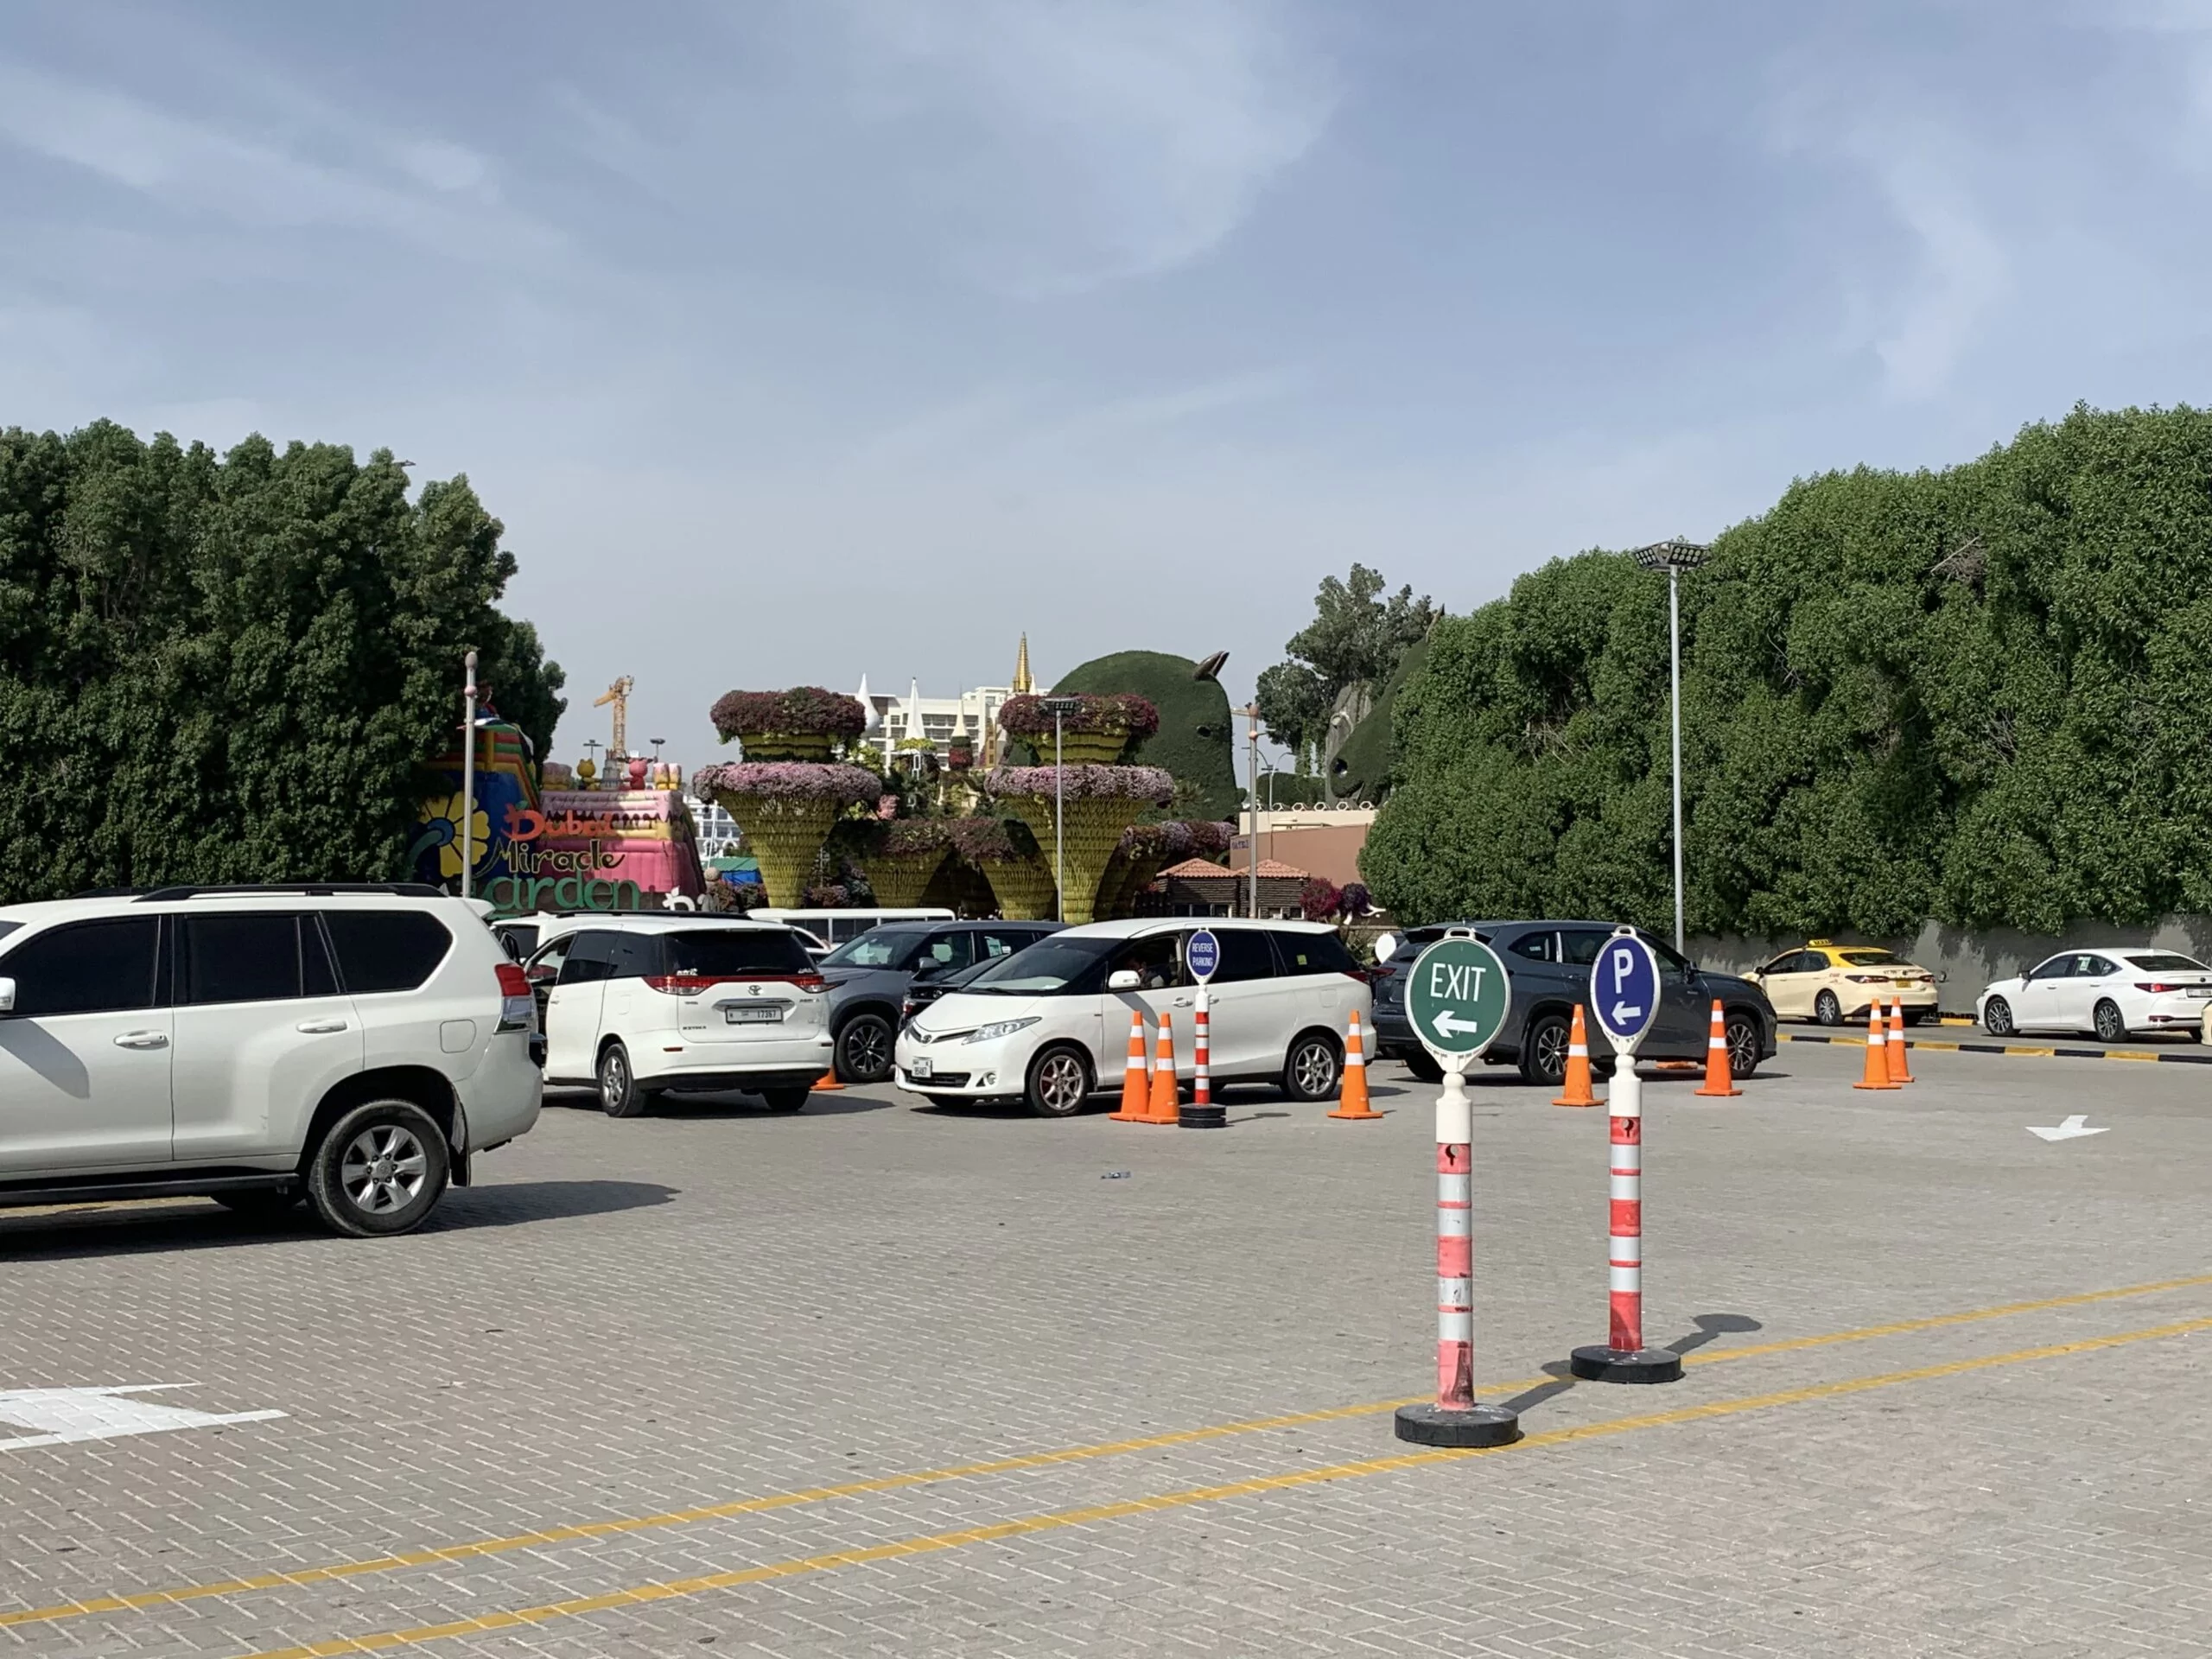 Free Parking at Dubai Miracle Garden